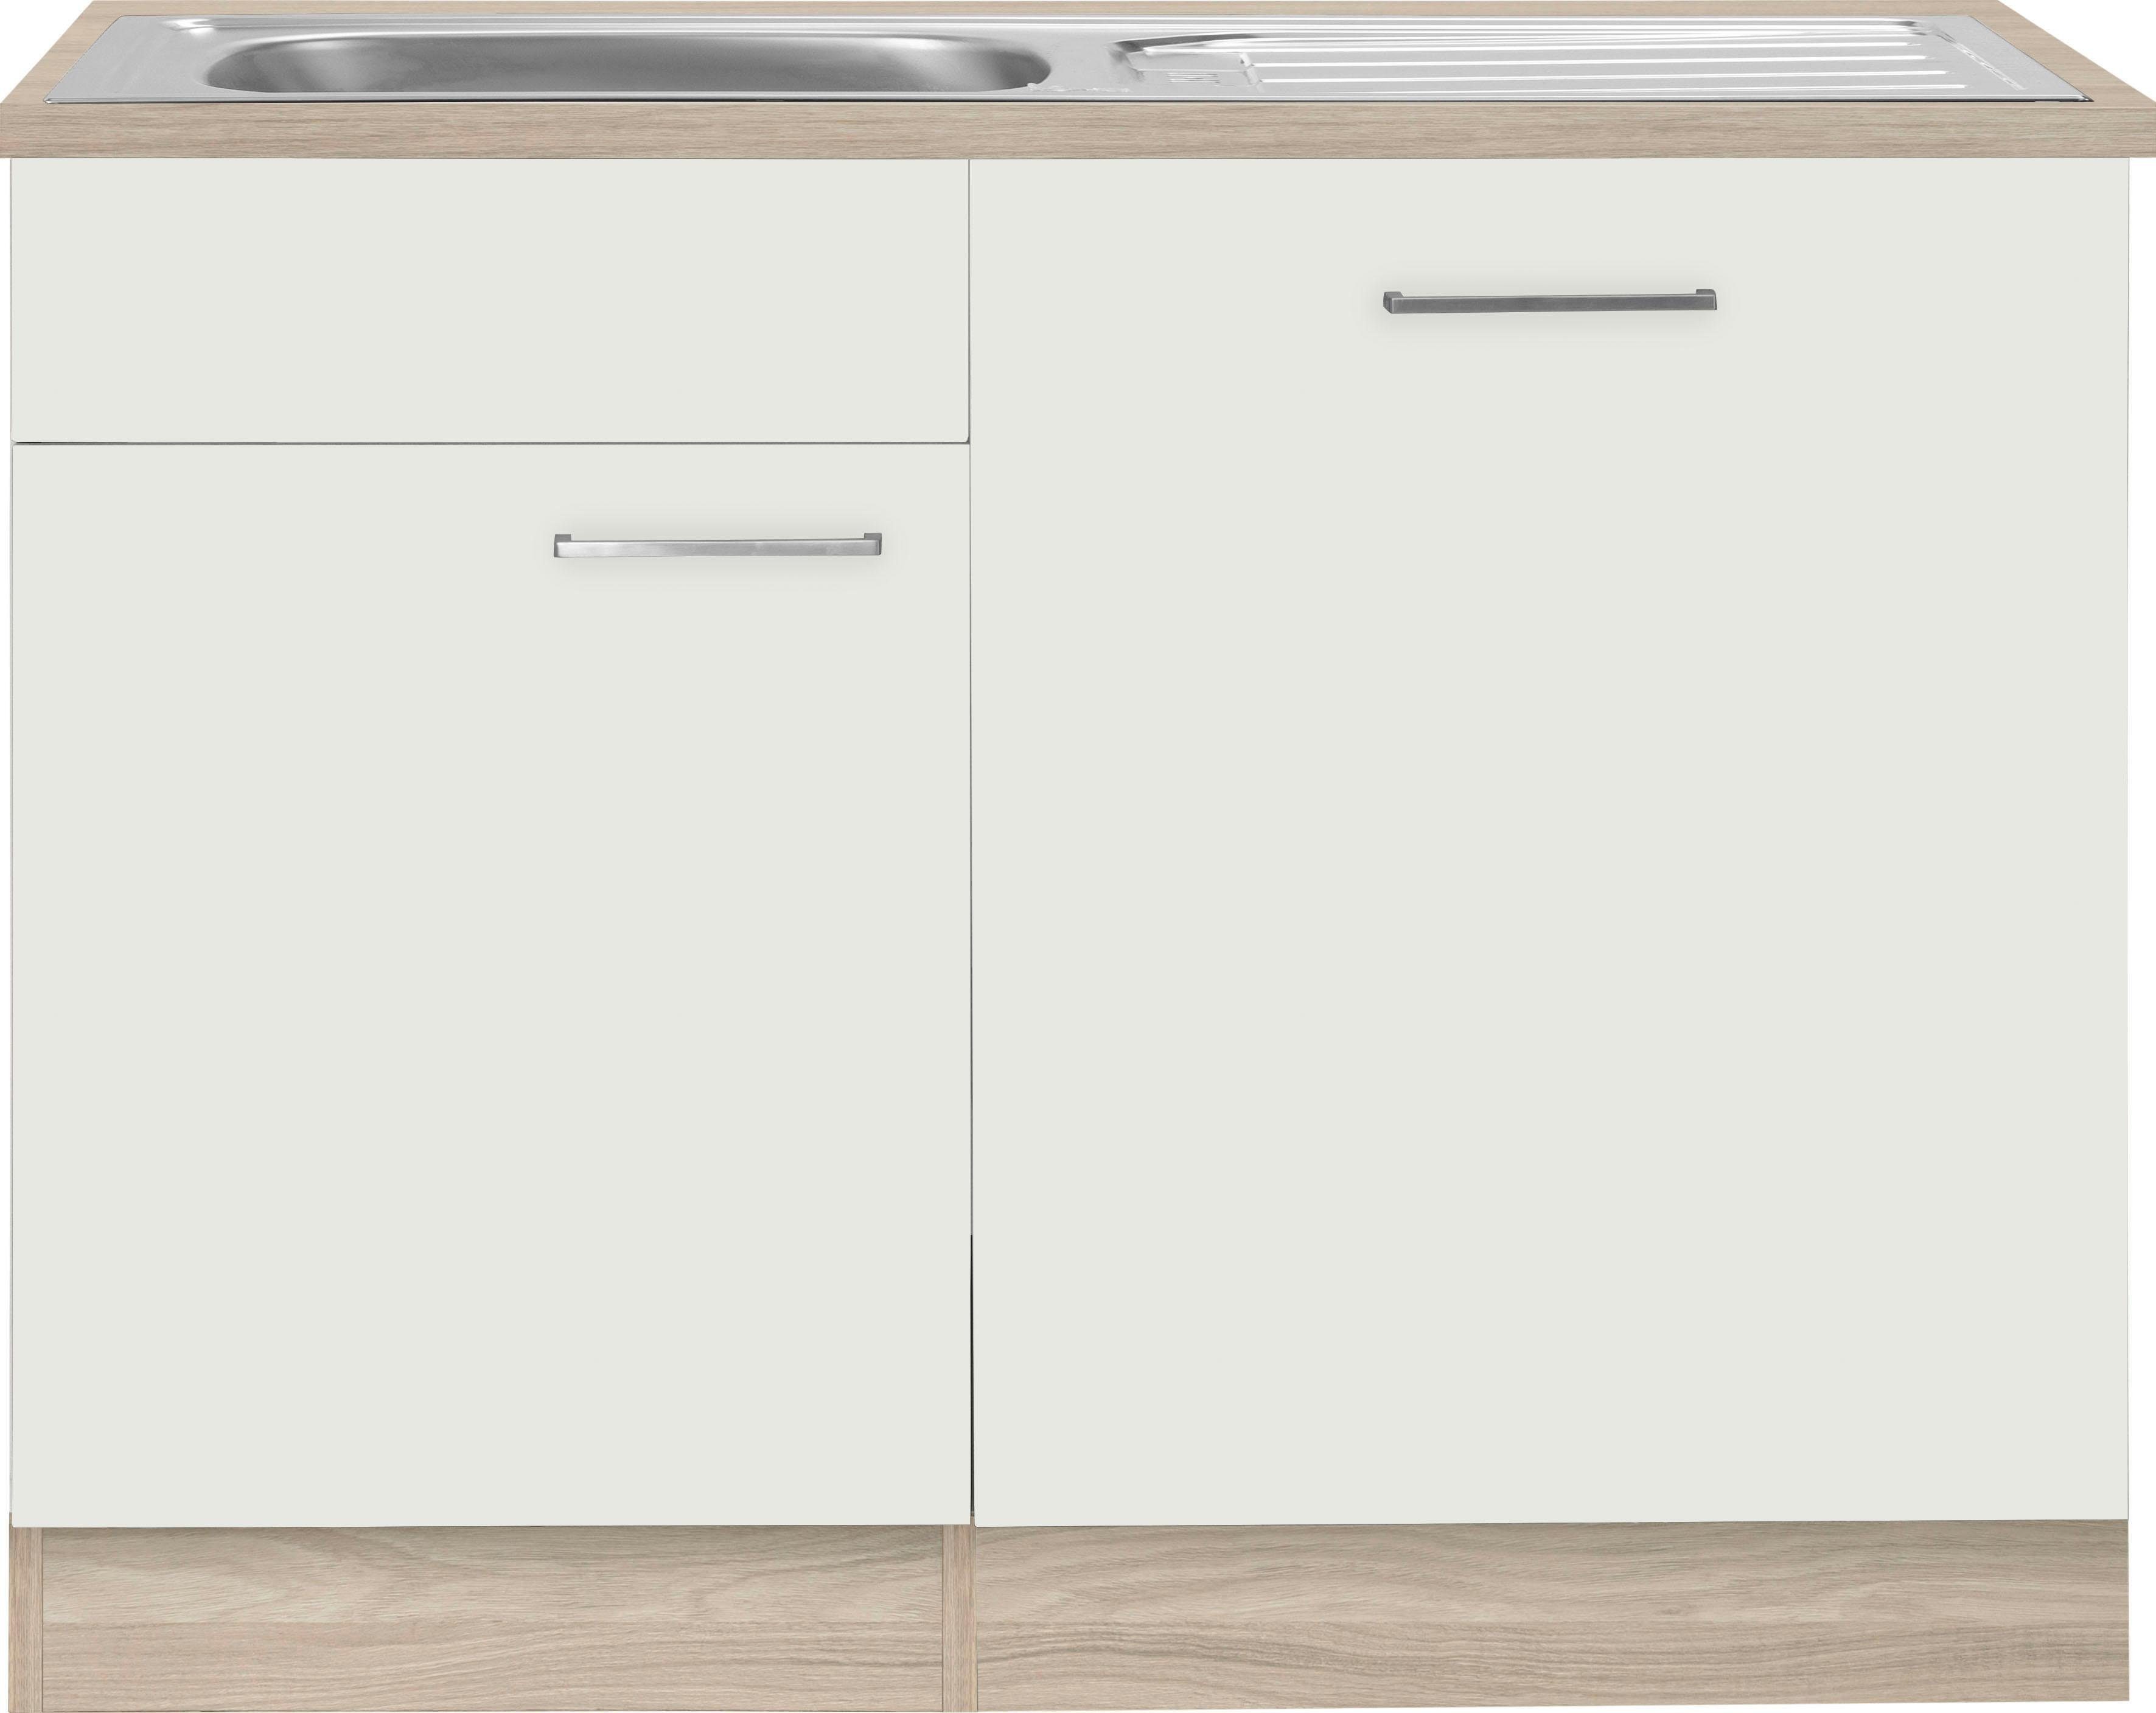 wiho Küchen Spülenschrank Zell Breite 110 cm, inkl. Tür/Sockel für Geschirrspüler weiß/satin eichefarben